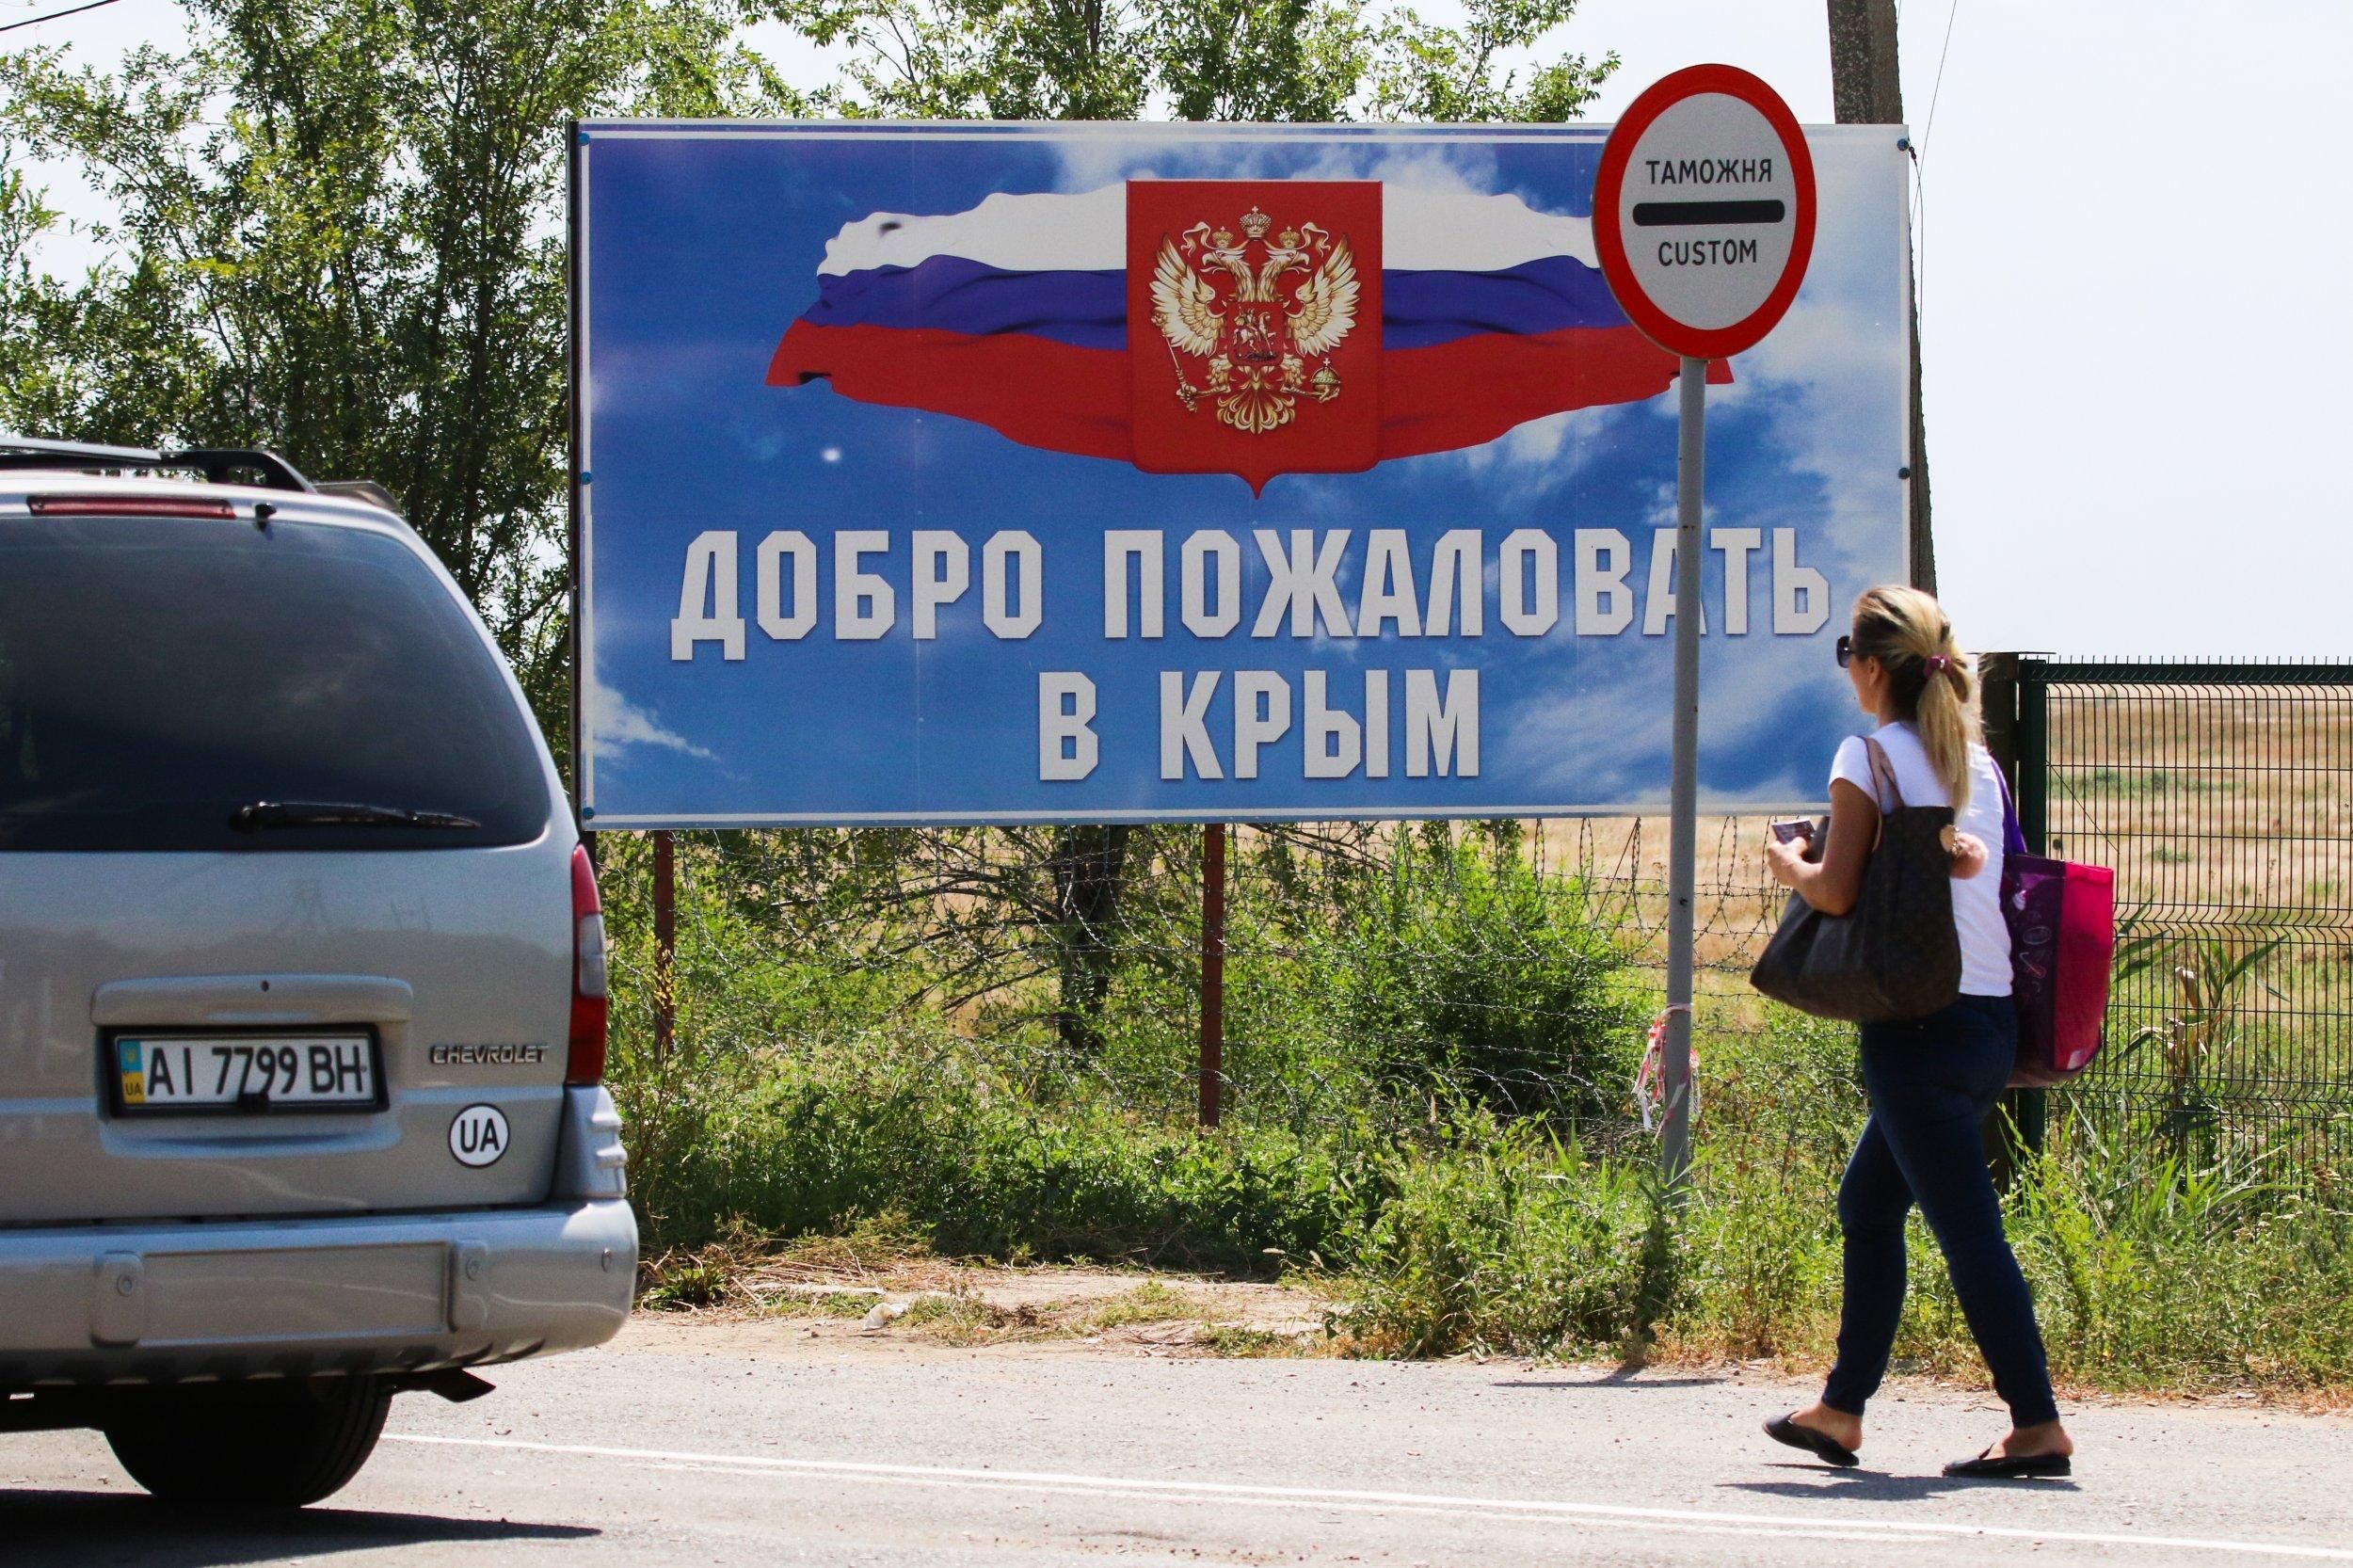 Програма заміщення населення: як Росія тисне на кримчан